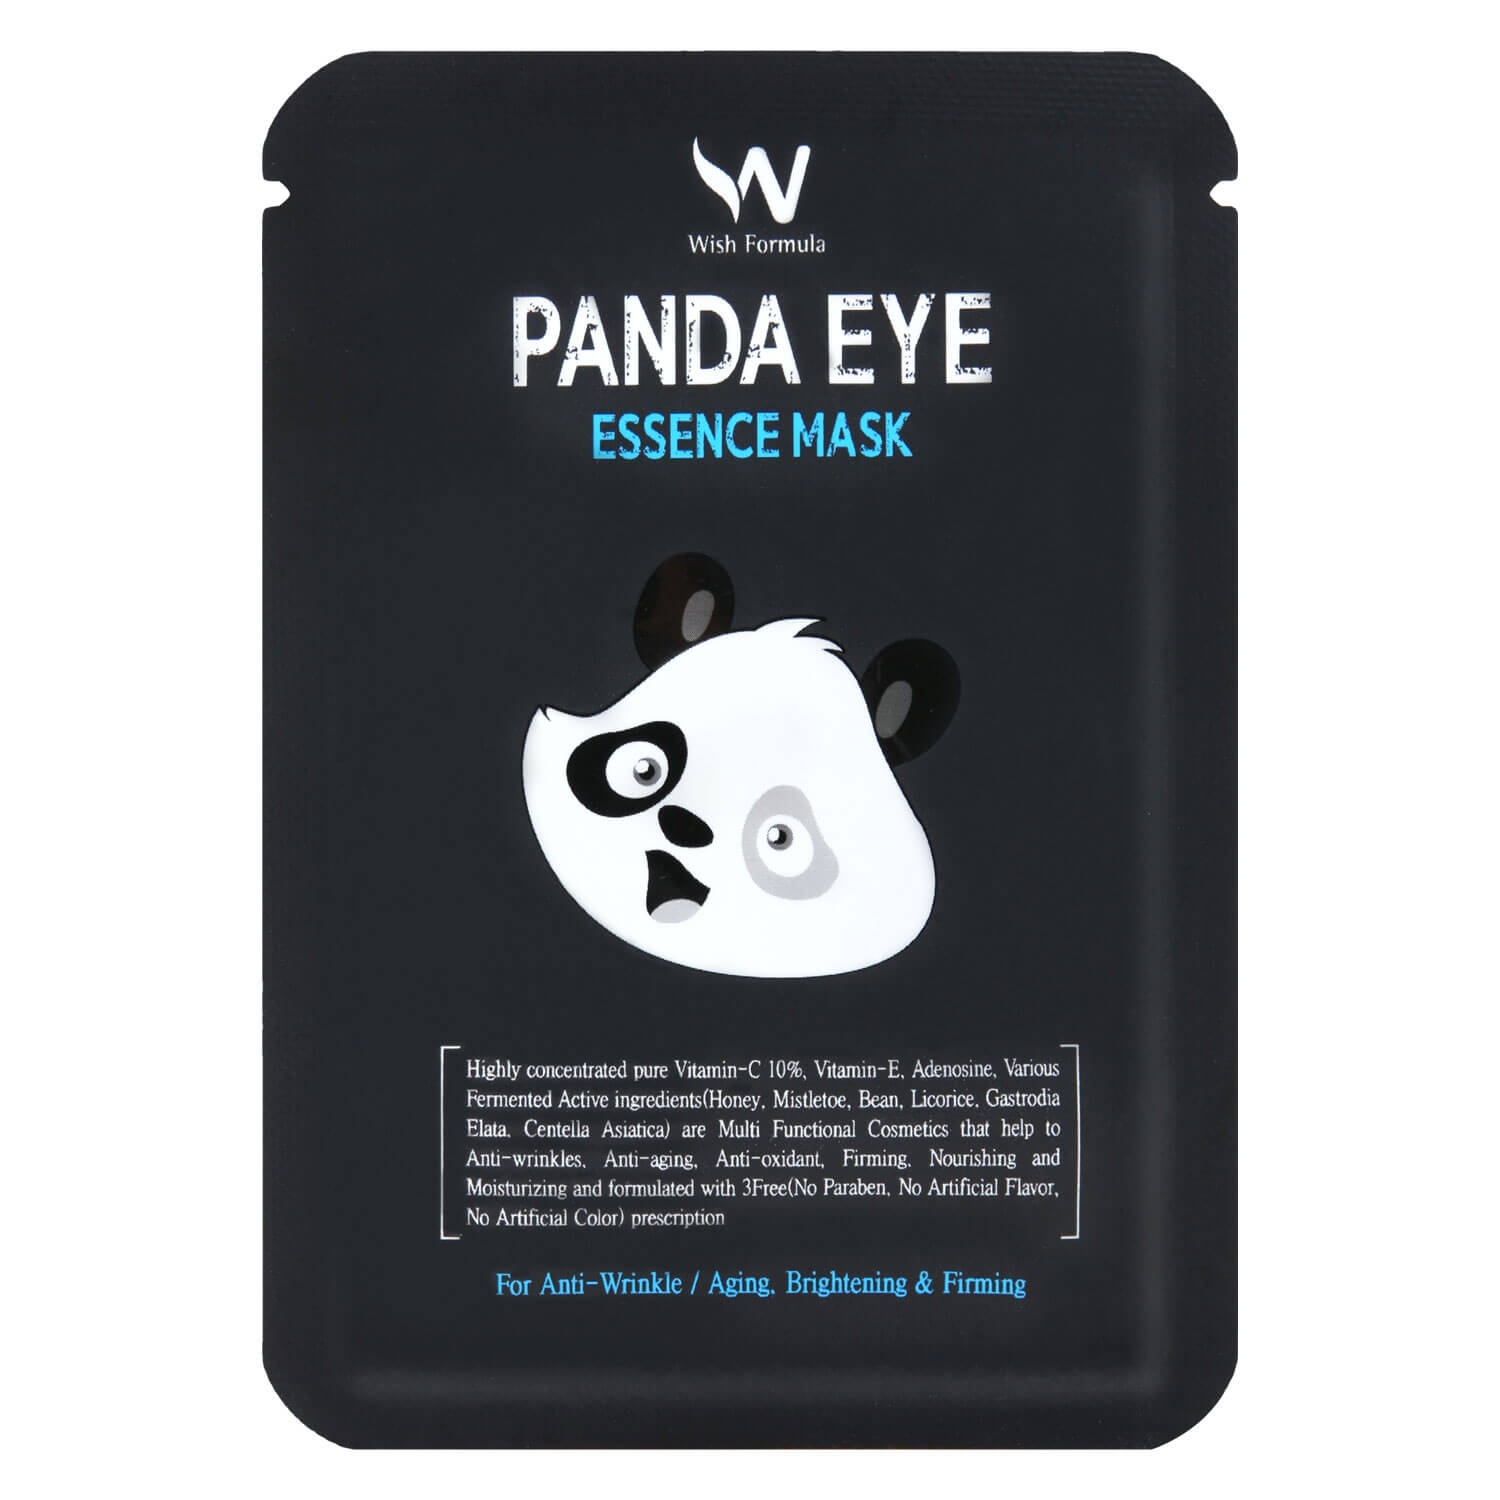 Product image from Wish Formula - Panda Eye Essence Mask